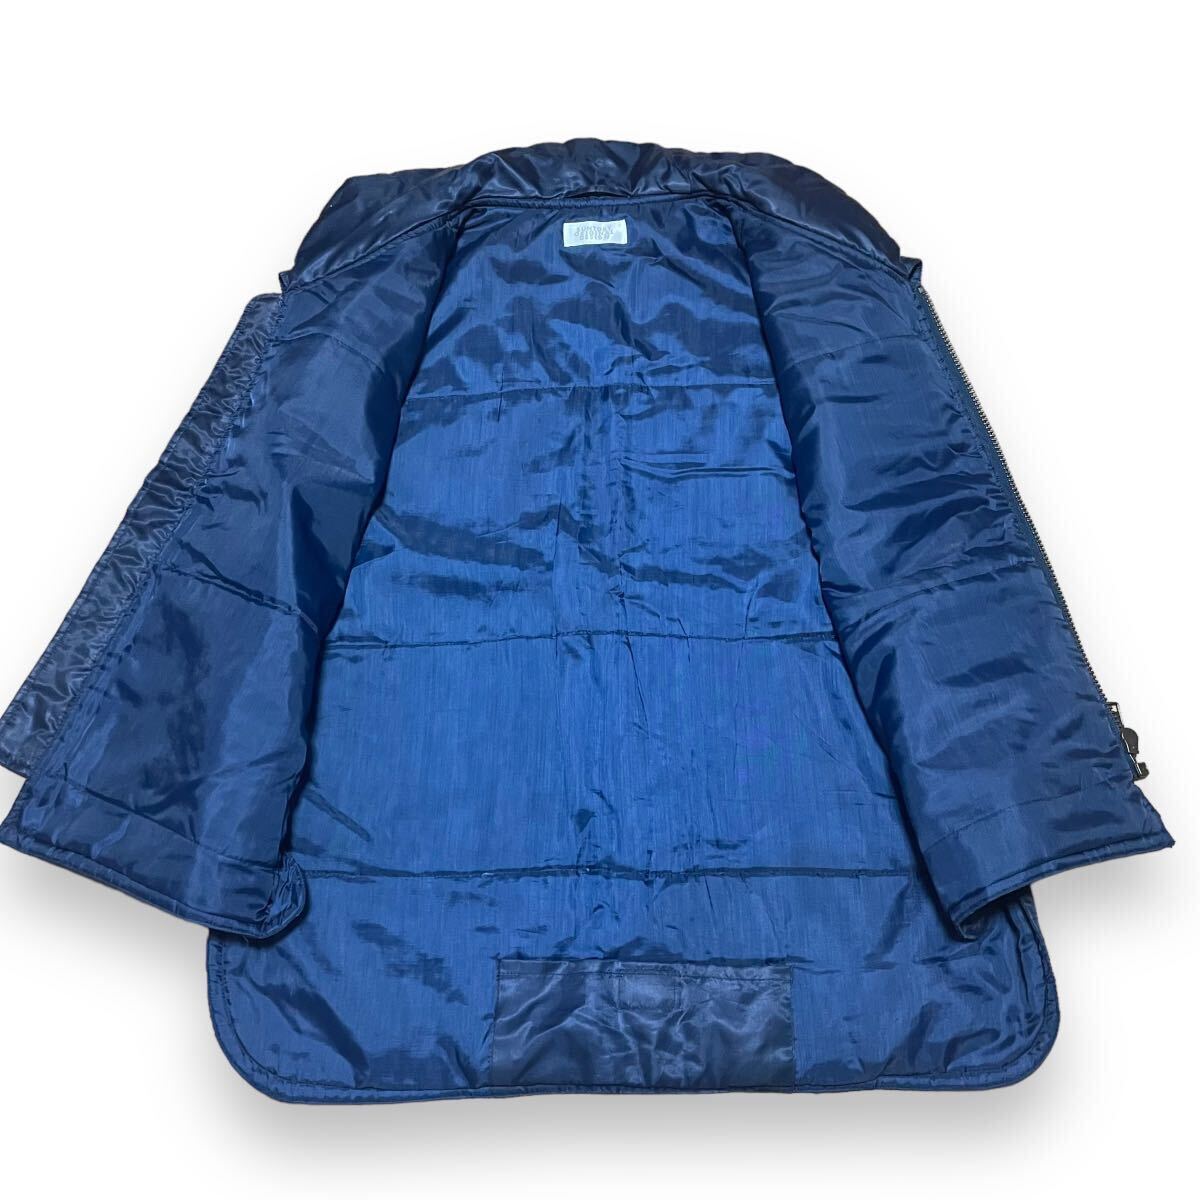  Suntory BOSS Jean лучший темно-синий свободный размер Boss Jean с хлопком внешний вышивка Novelty Logo рабочая одежда бирка choki